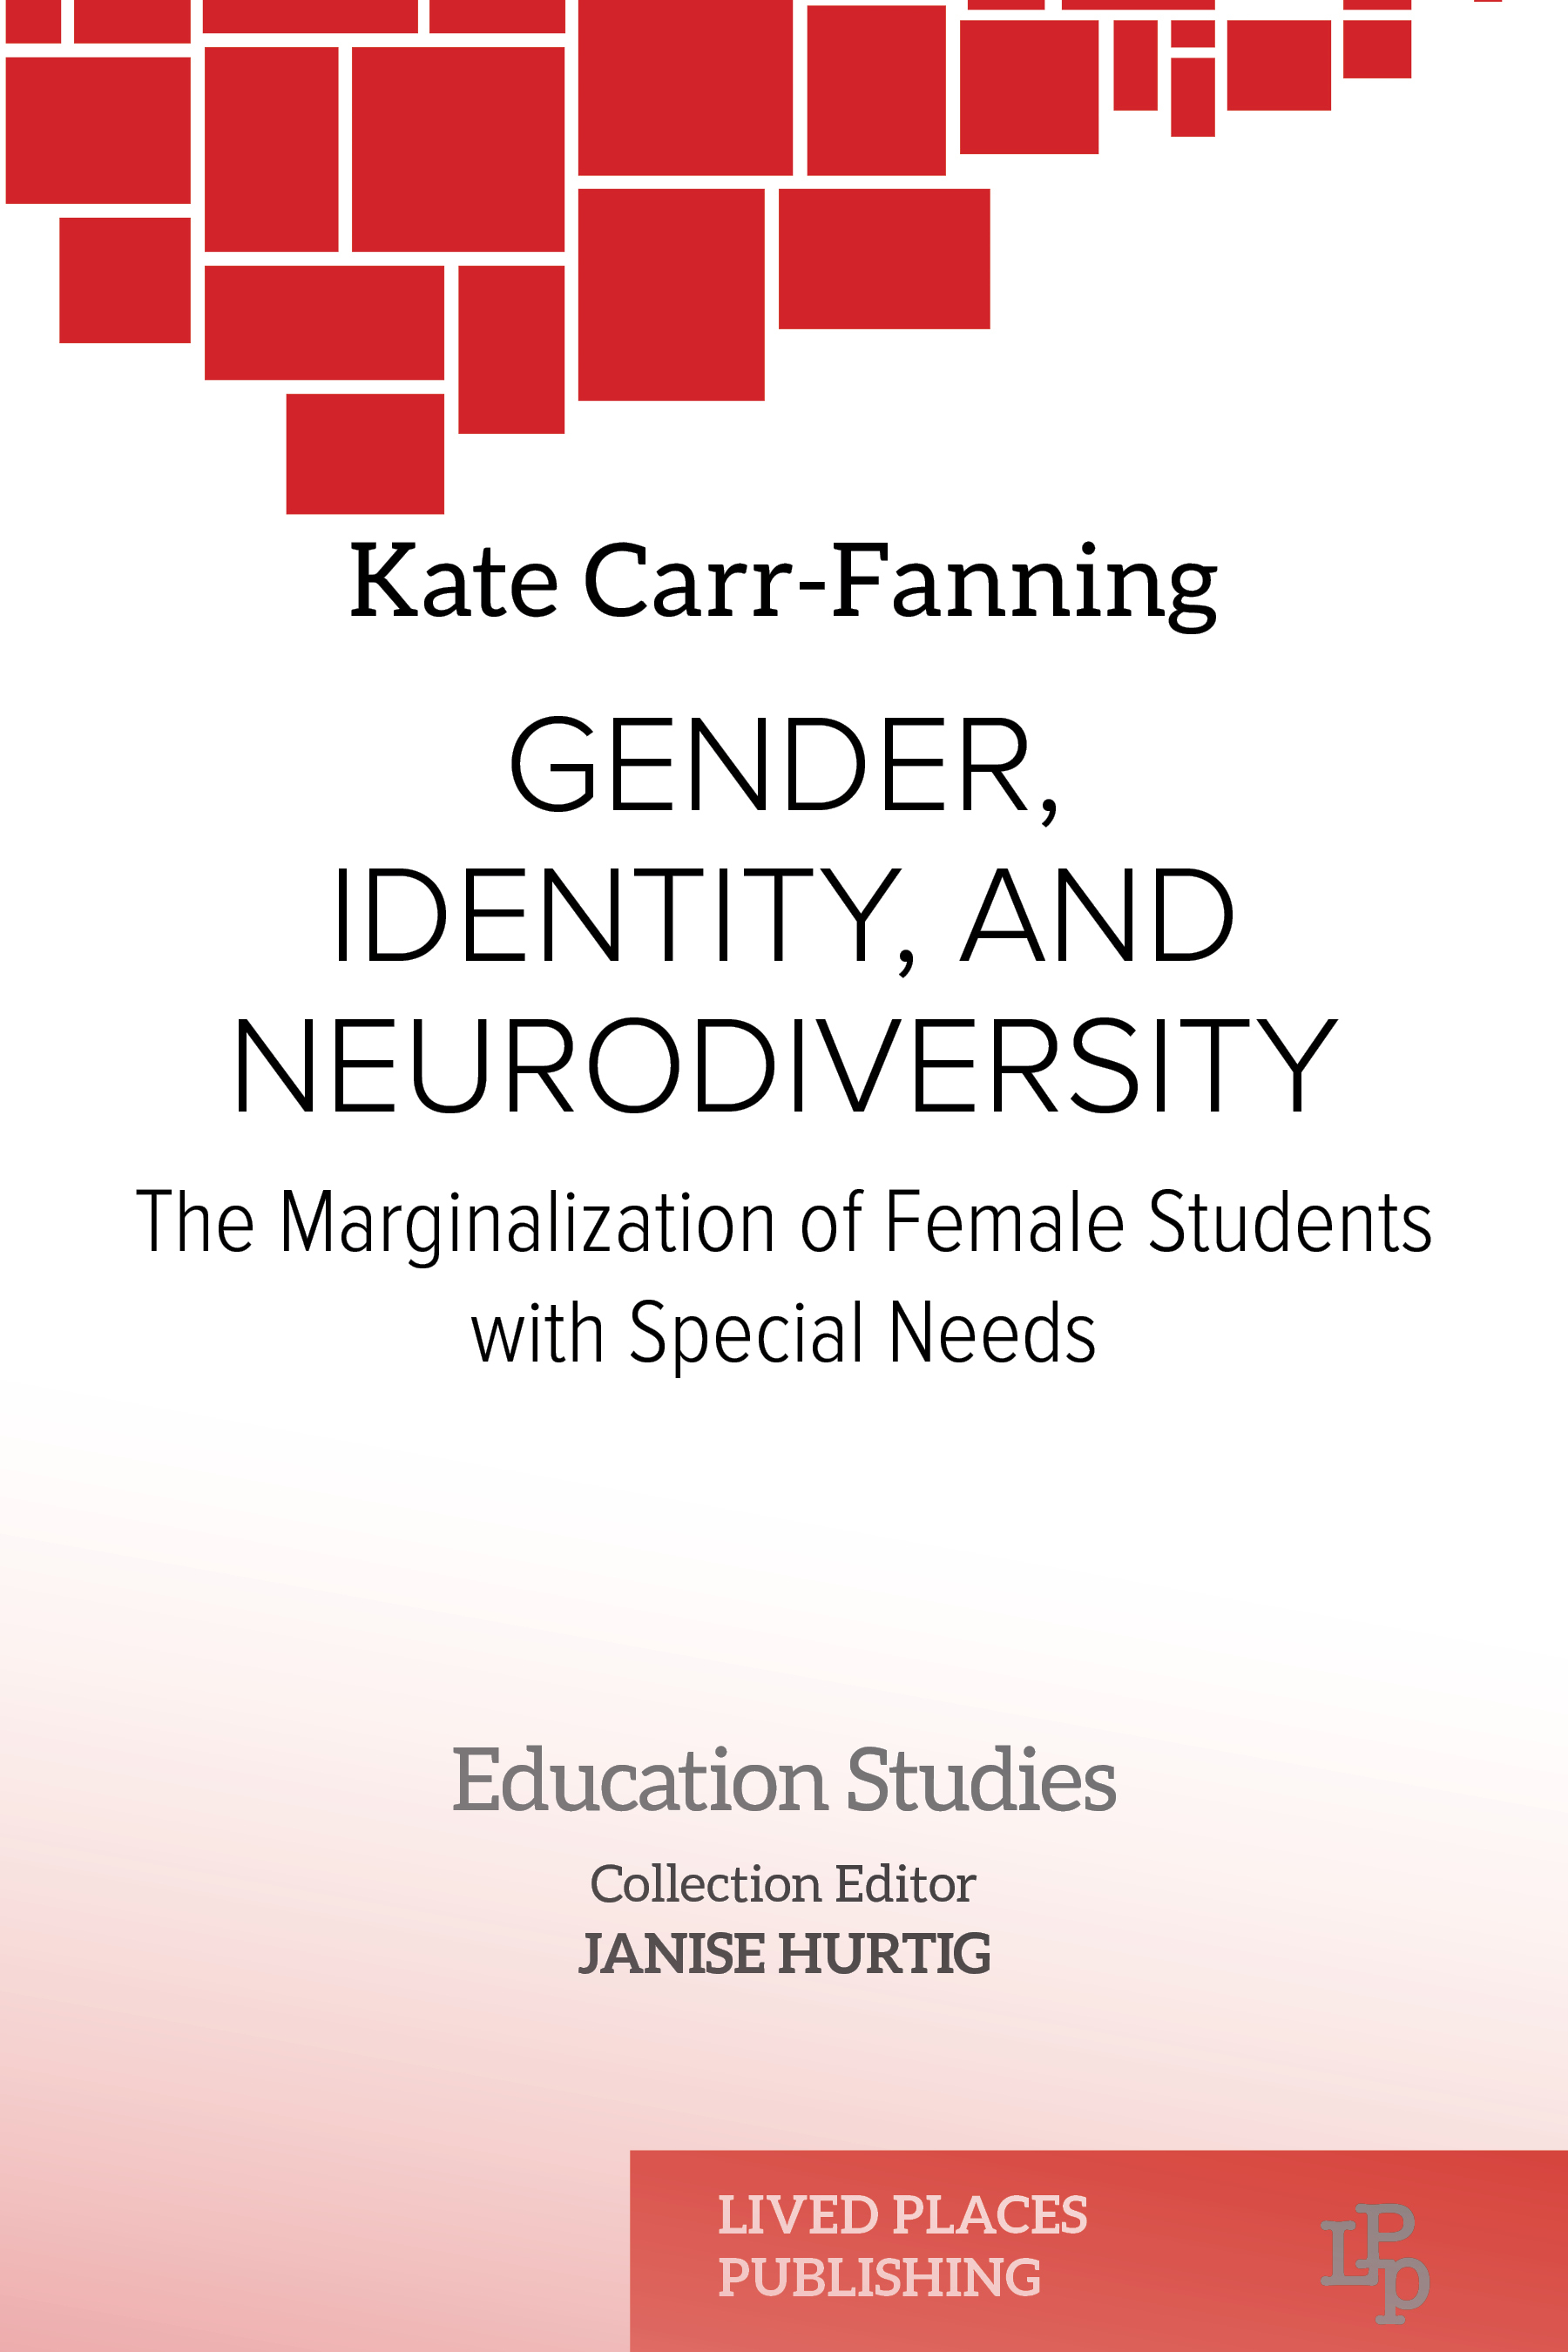 Gender, Identity, and Neurodiversity